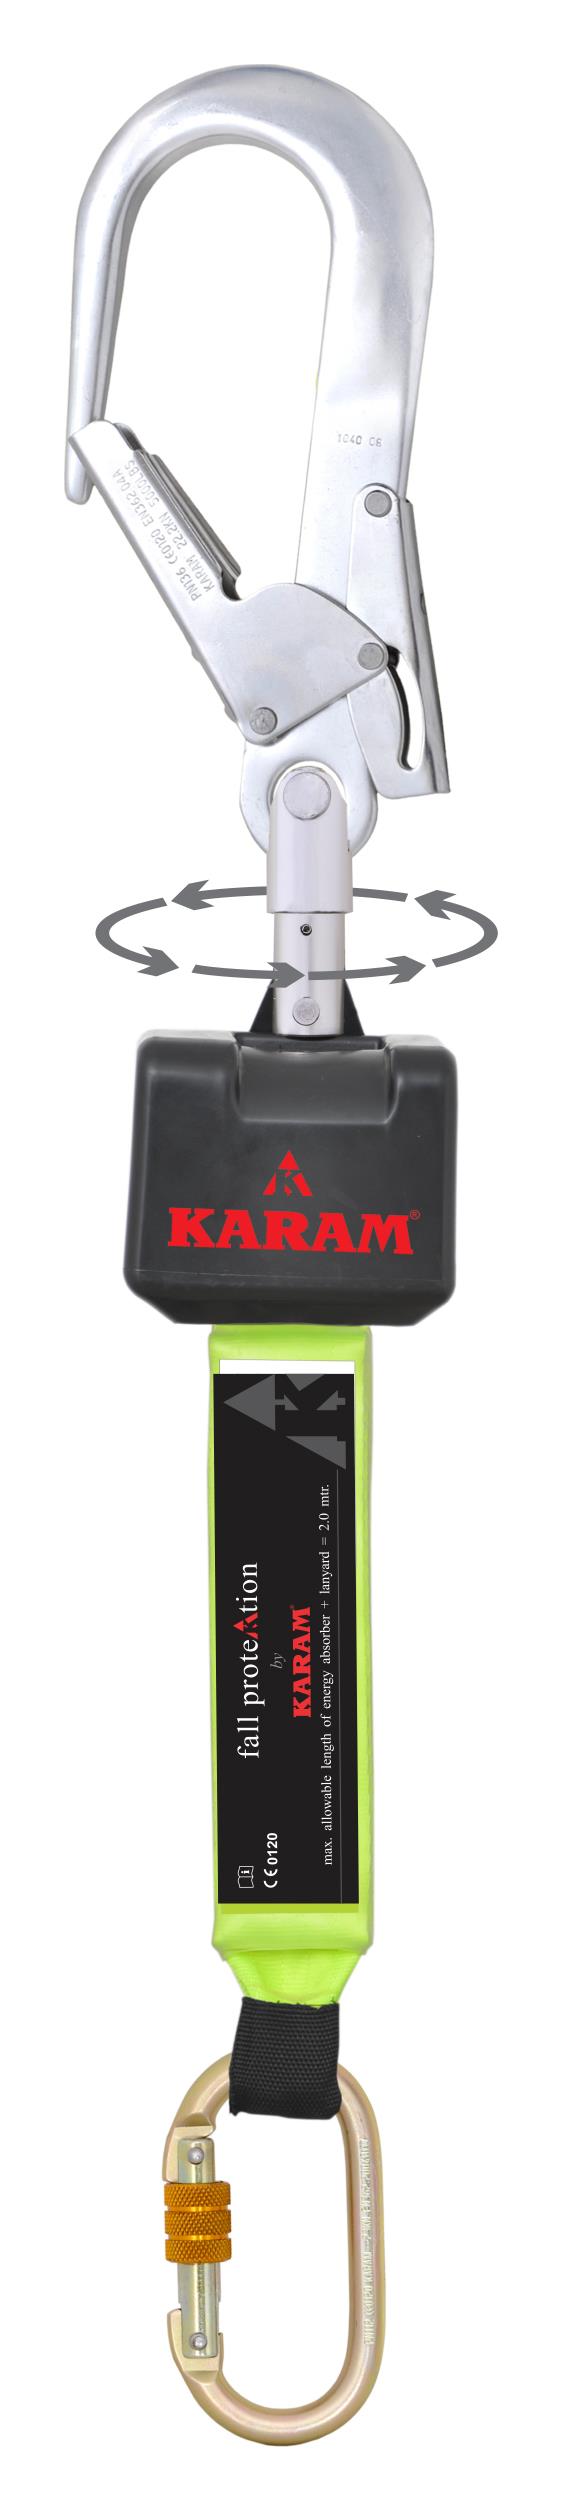 อุปกรณ์ป้องกันการตก Karam PN-2002(SW136),อุปกรณ์ป้องกันการตก,Karam,Plant and Facility Equipment/Safety Equipment/Fall Protection Equipment